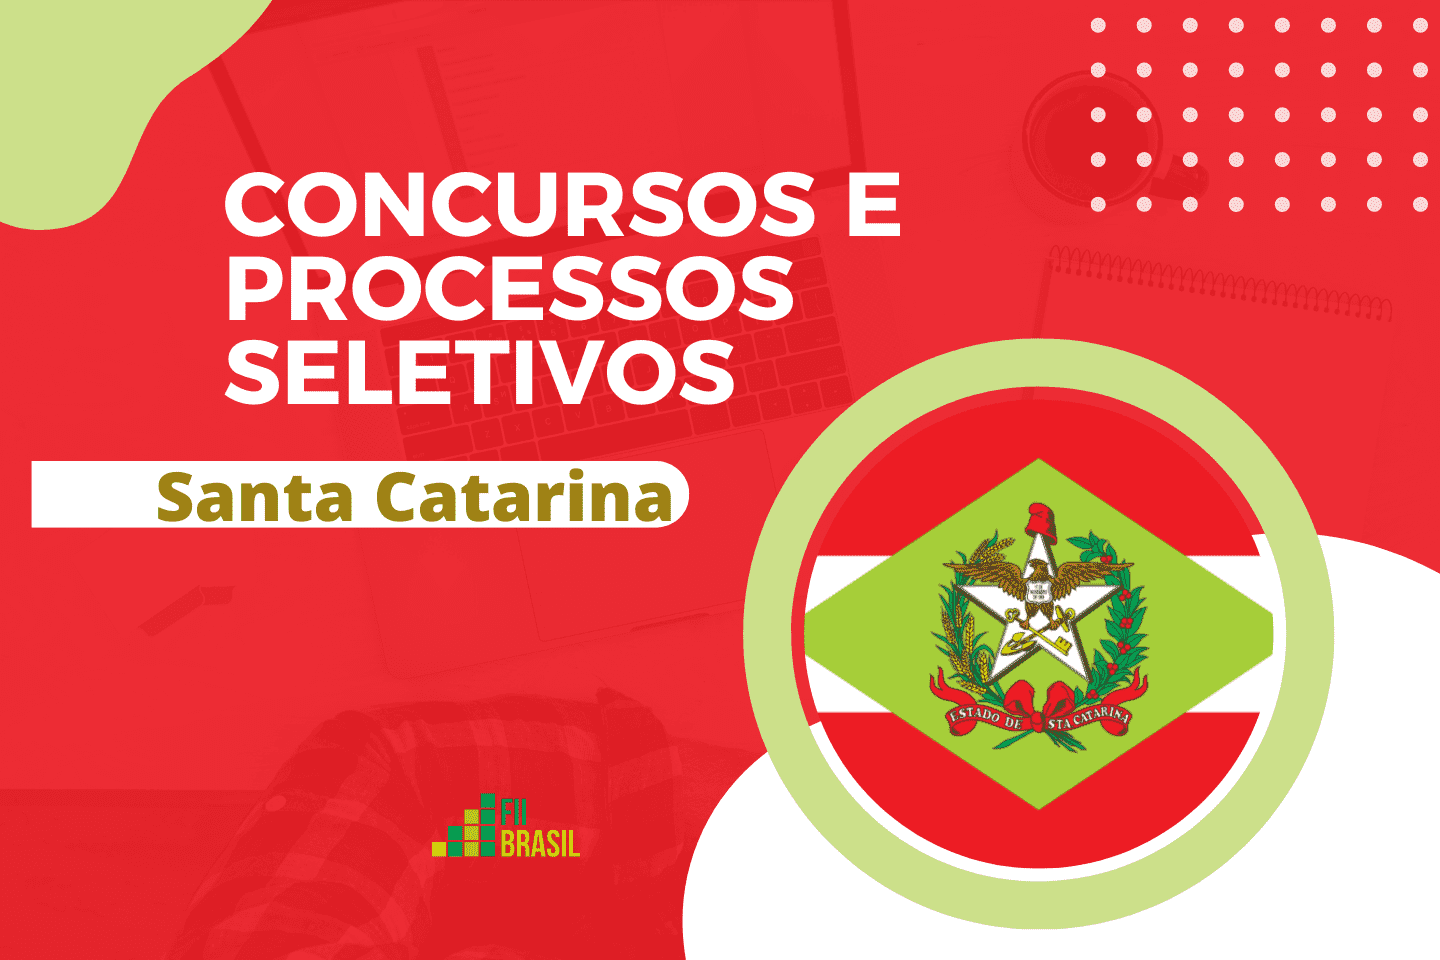 Concursos em Santa Catarina